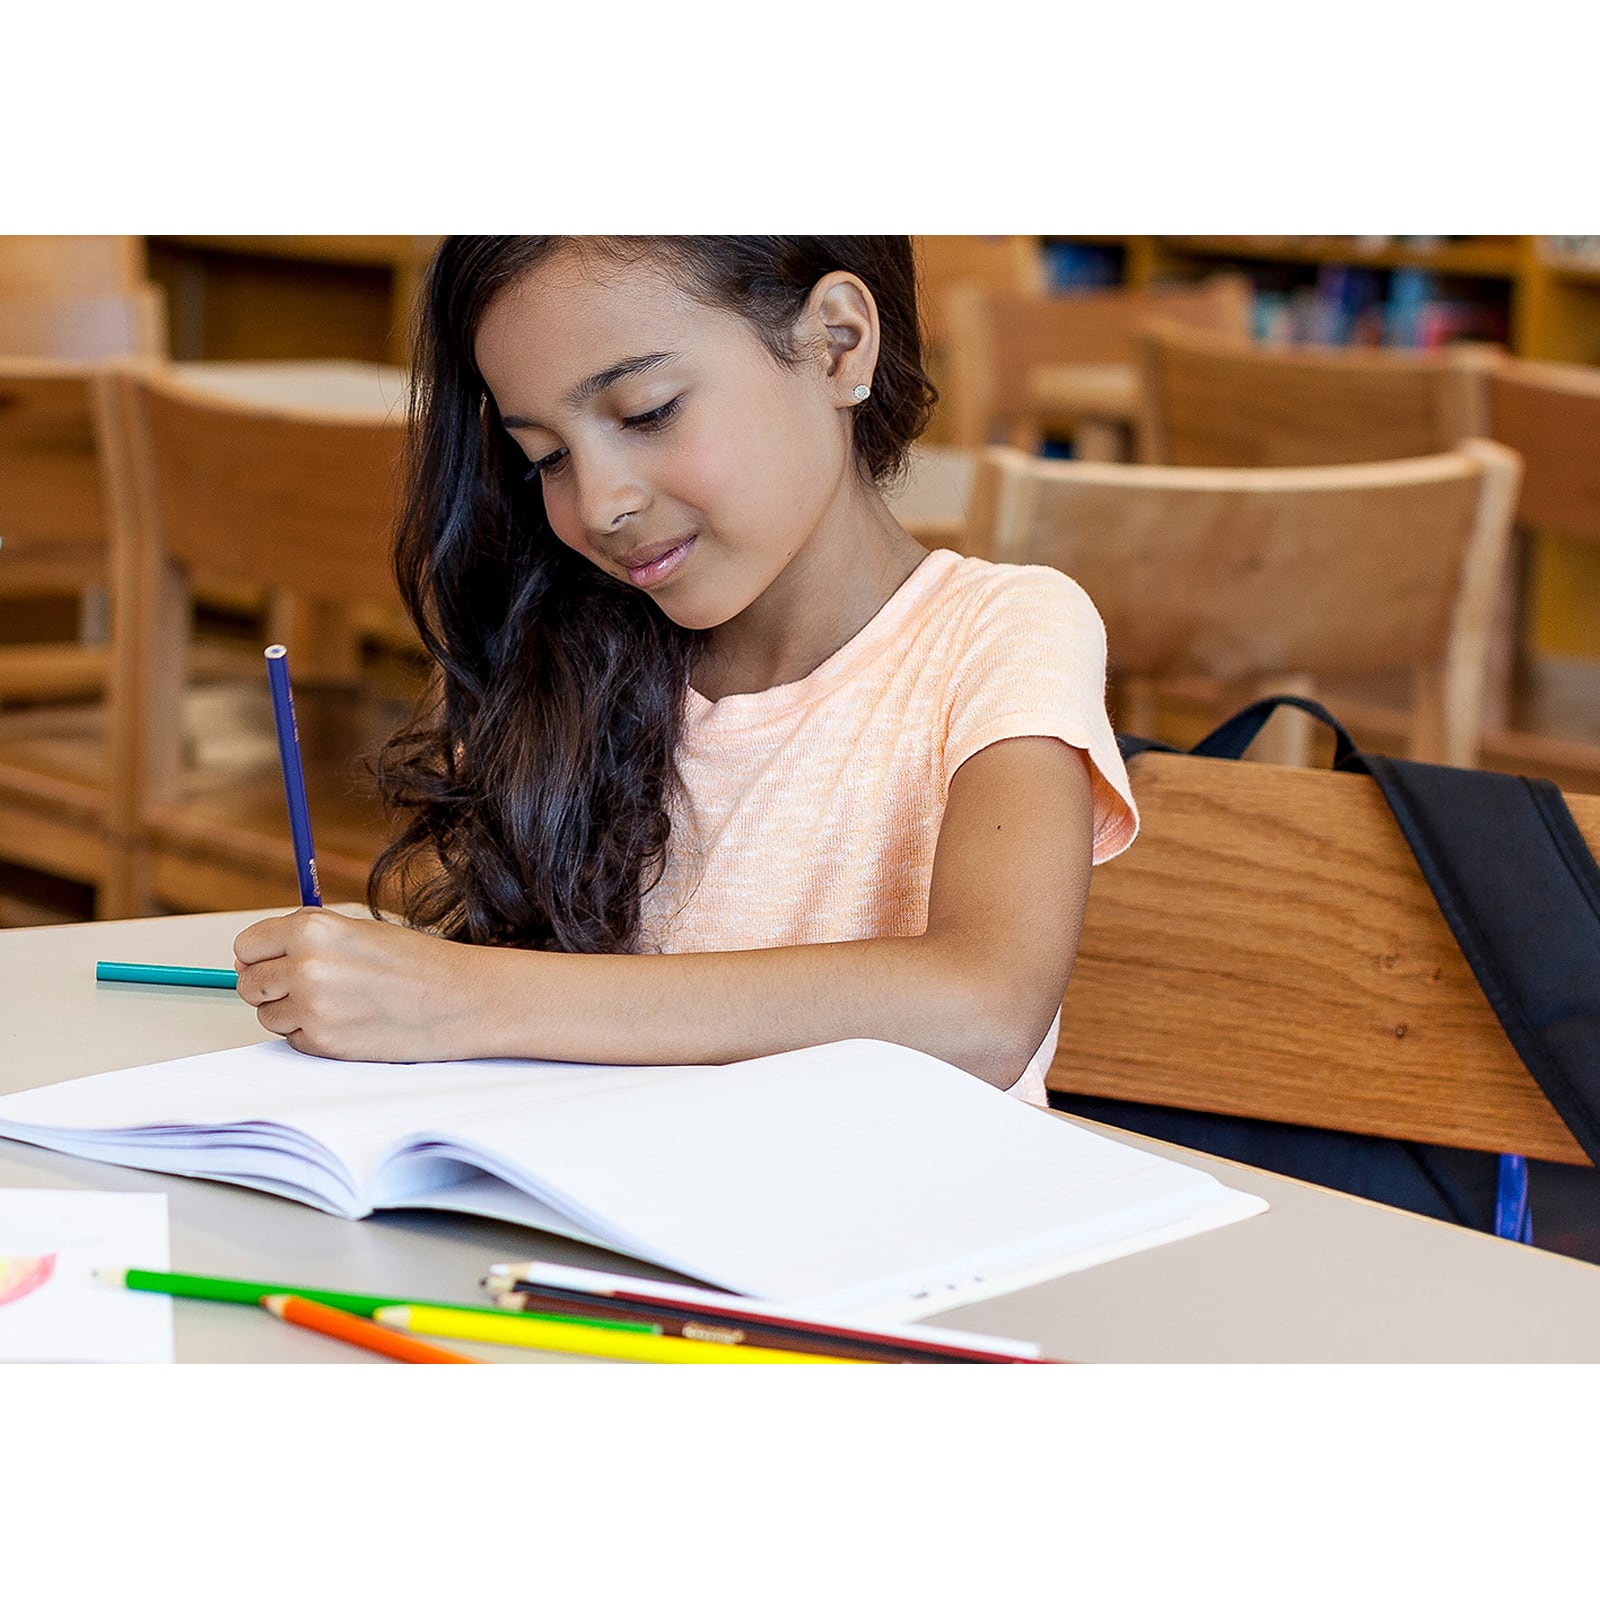 Crayola&#xAE; Colored Pencil Classpack&#xAE;, 462 Count